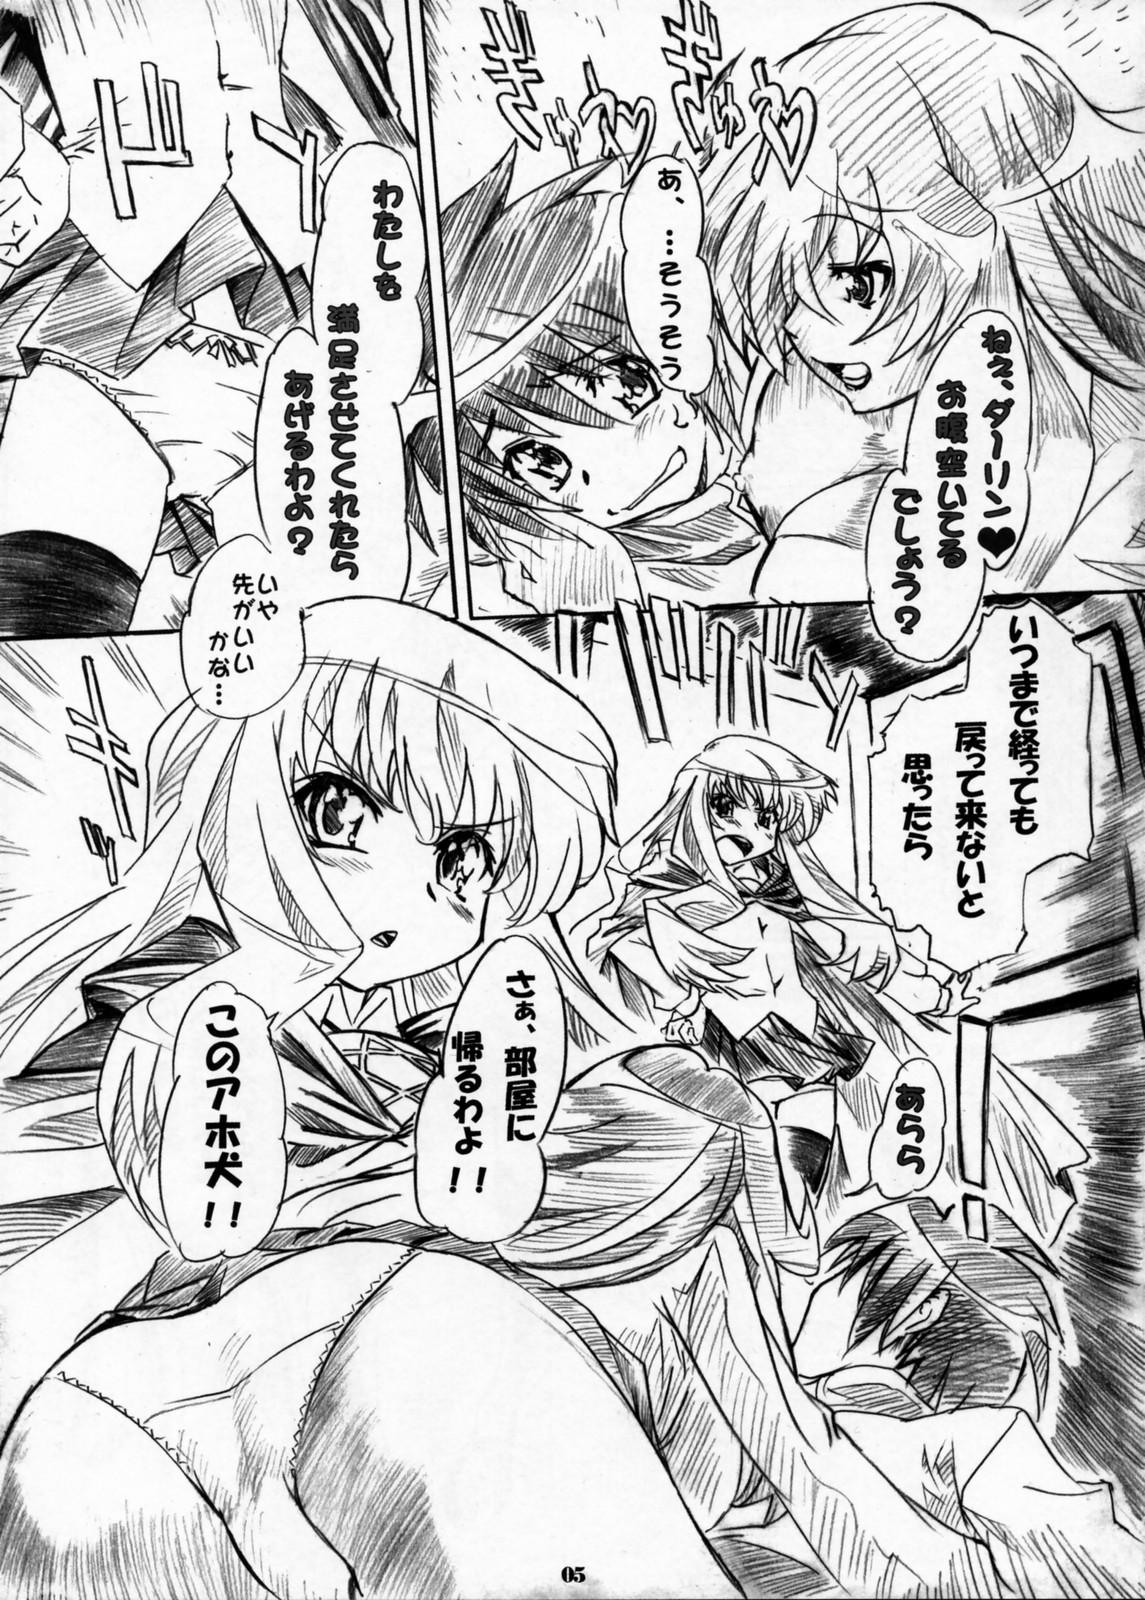 Lesbians Kizoku Gokuraku - Zero no tsukaima Juggs - Page 4